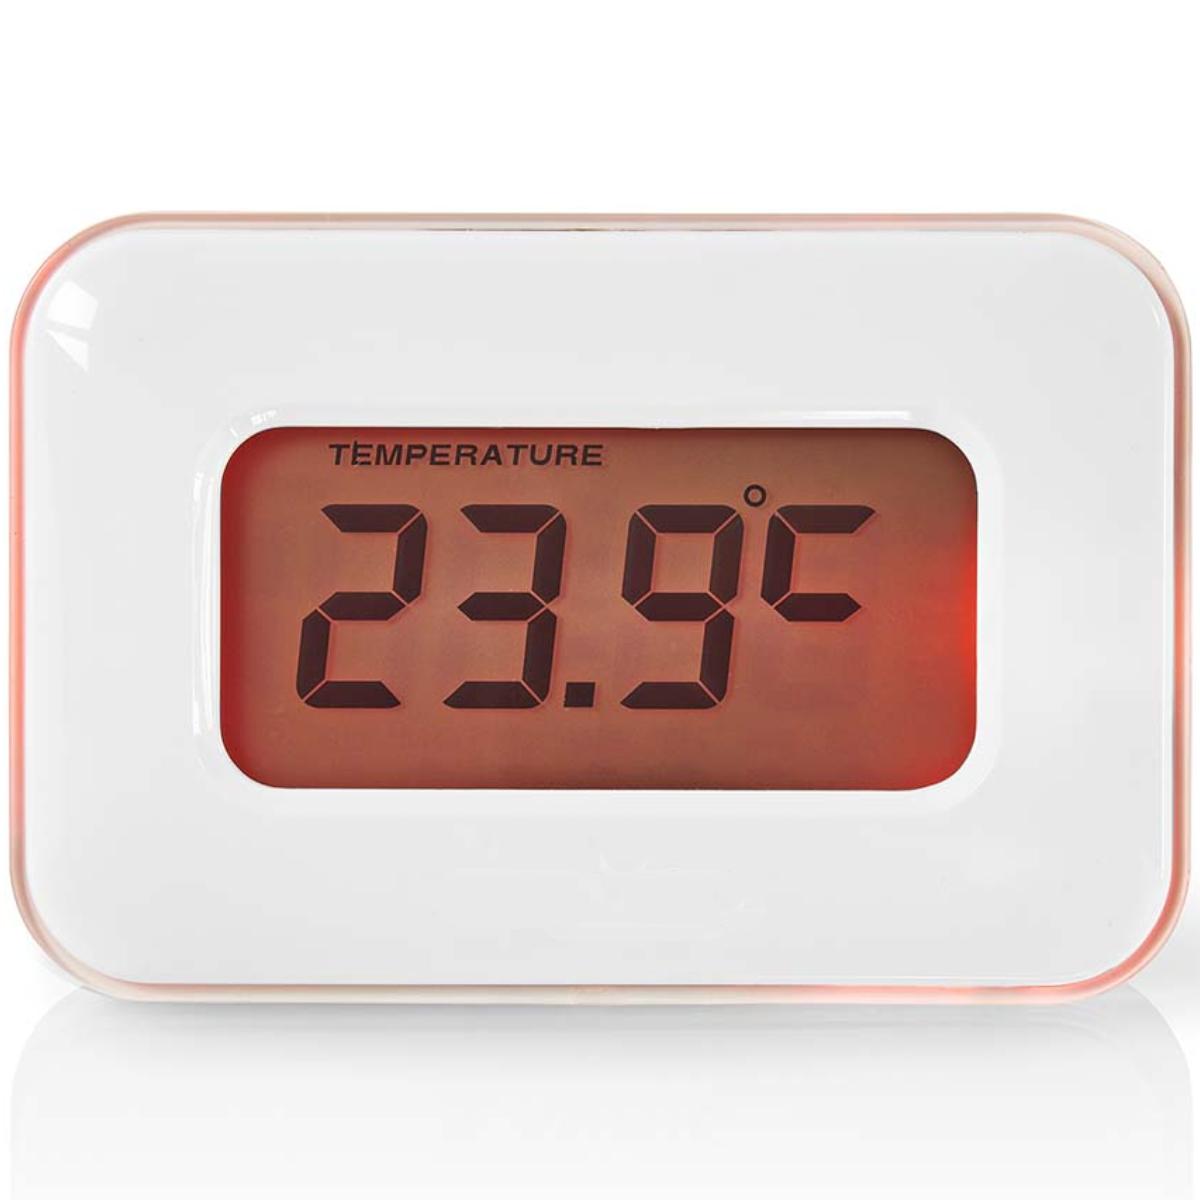 digitale-alarmklok-datum-temperatuur-kleurendisplay-multifunctionele-alarmklok-die-tijd-datum-en-kamertemperatuur-weergeeft-en-voorzien-is-van-een-alarm-en